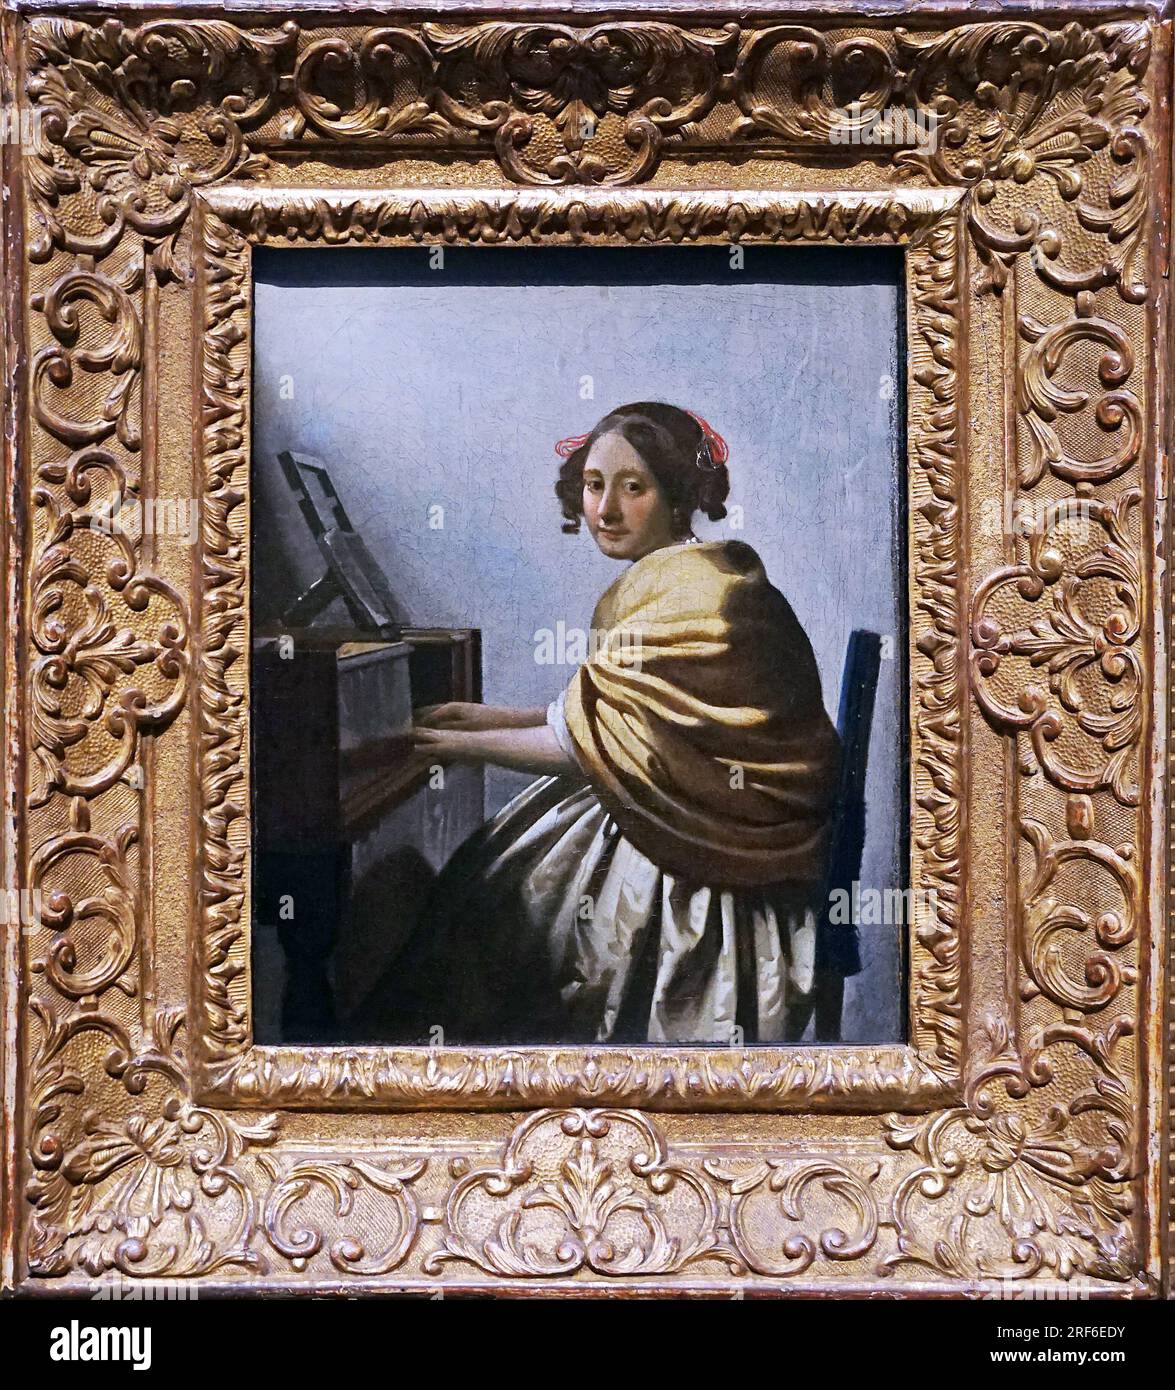 Junge Frau auf dem Platz einer Jungfrau von Johannes Vermeer Jan Vermeer 1632 - 1675. Niederländischer Barockmaler. Stockfoto